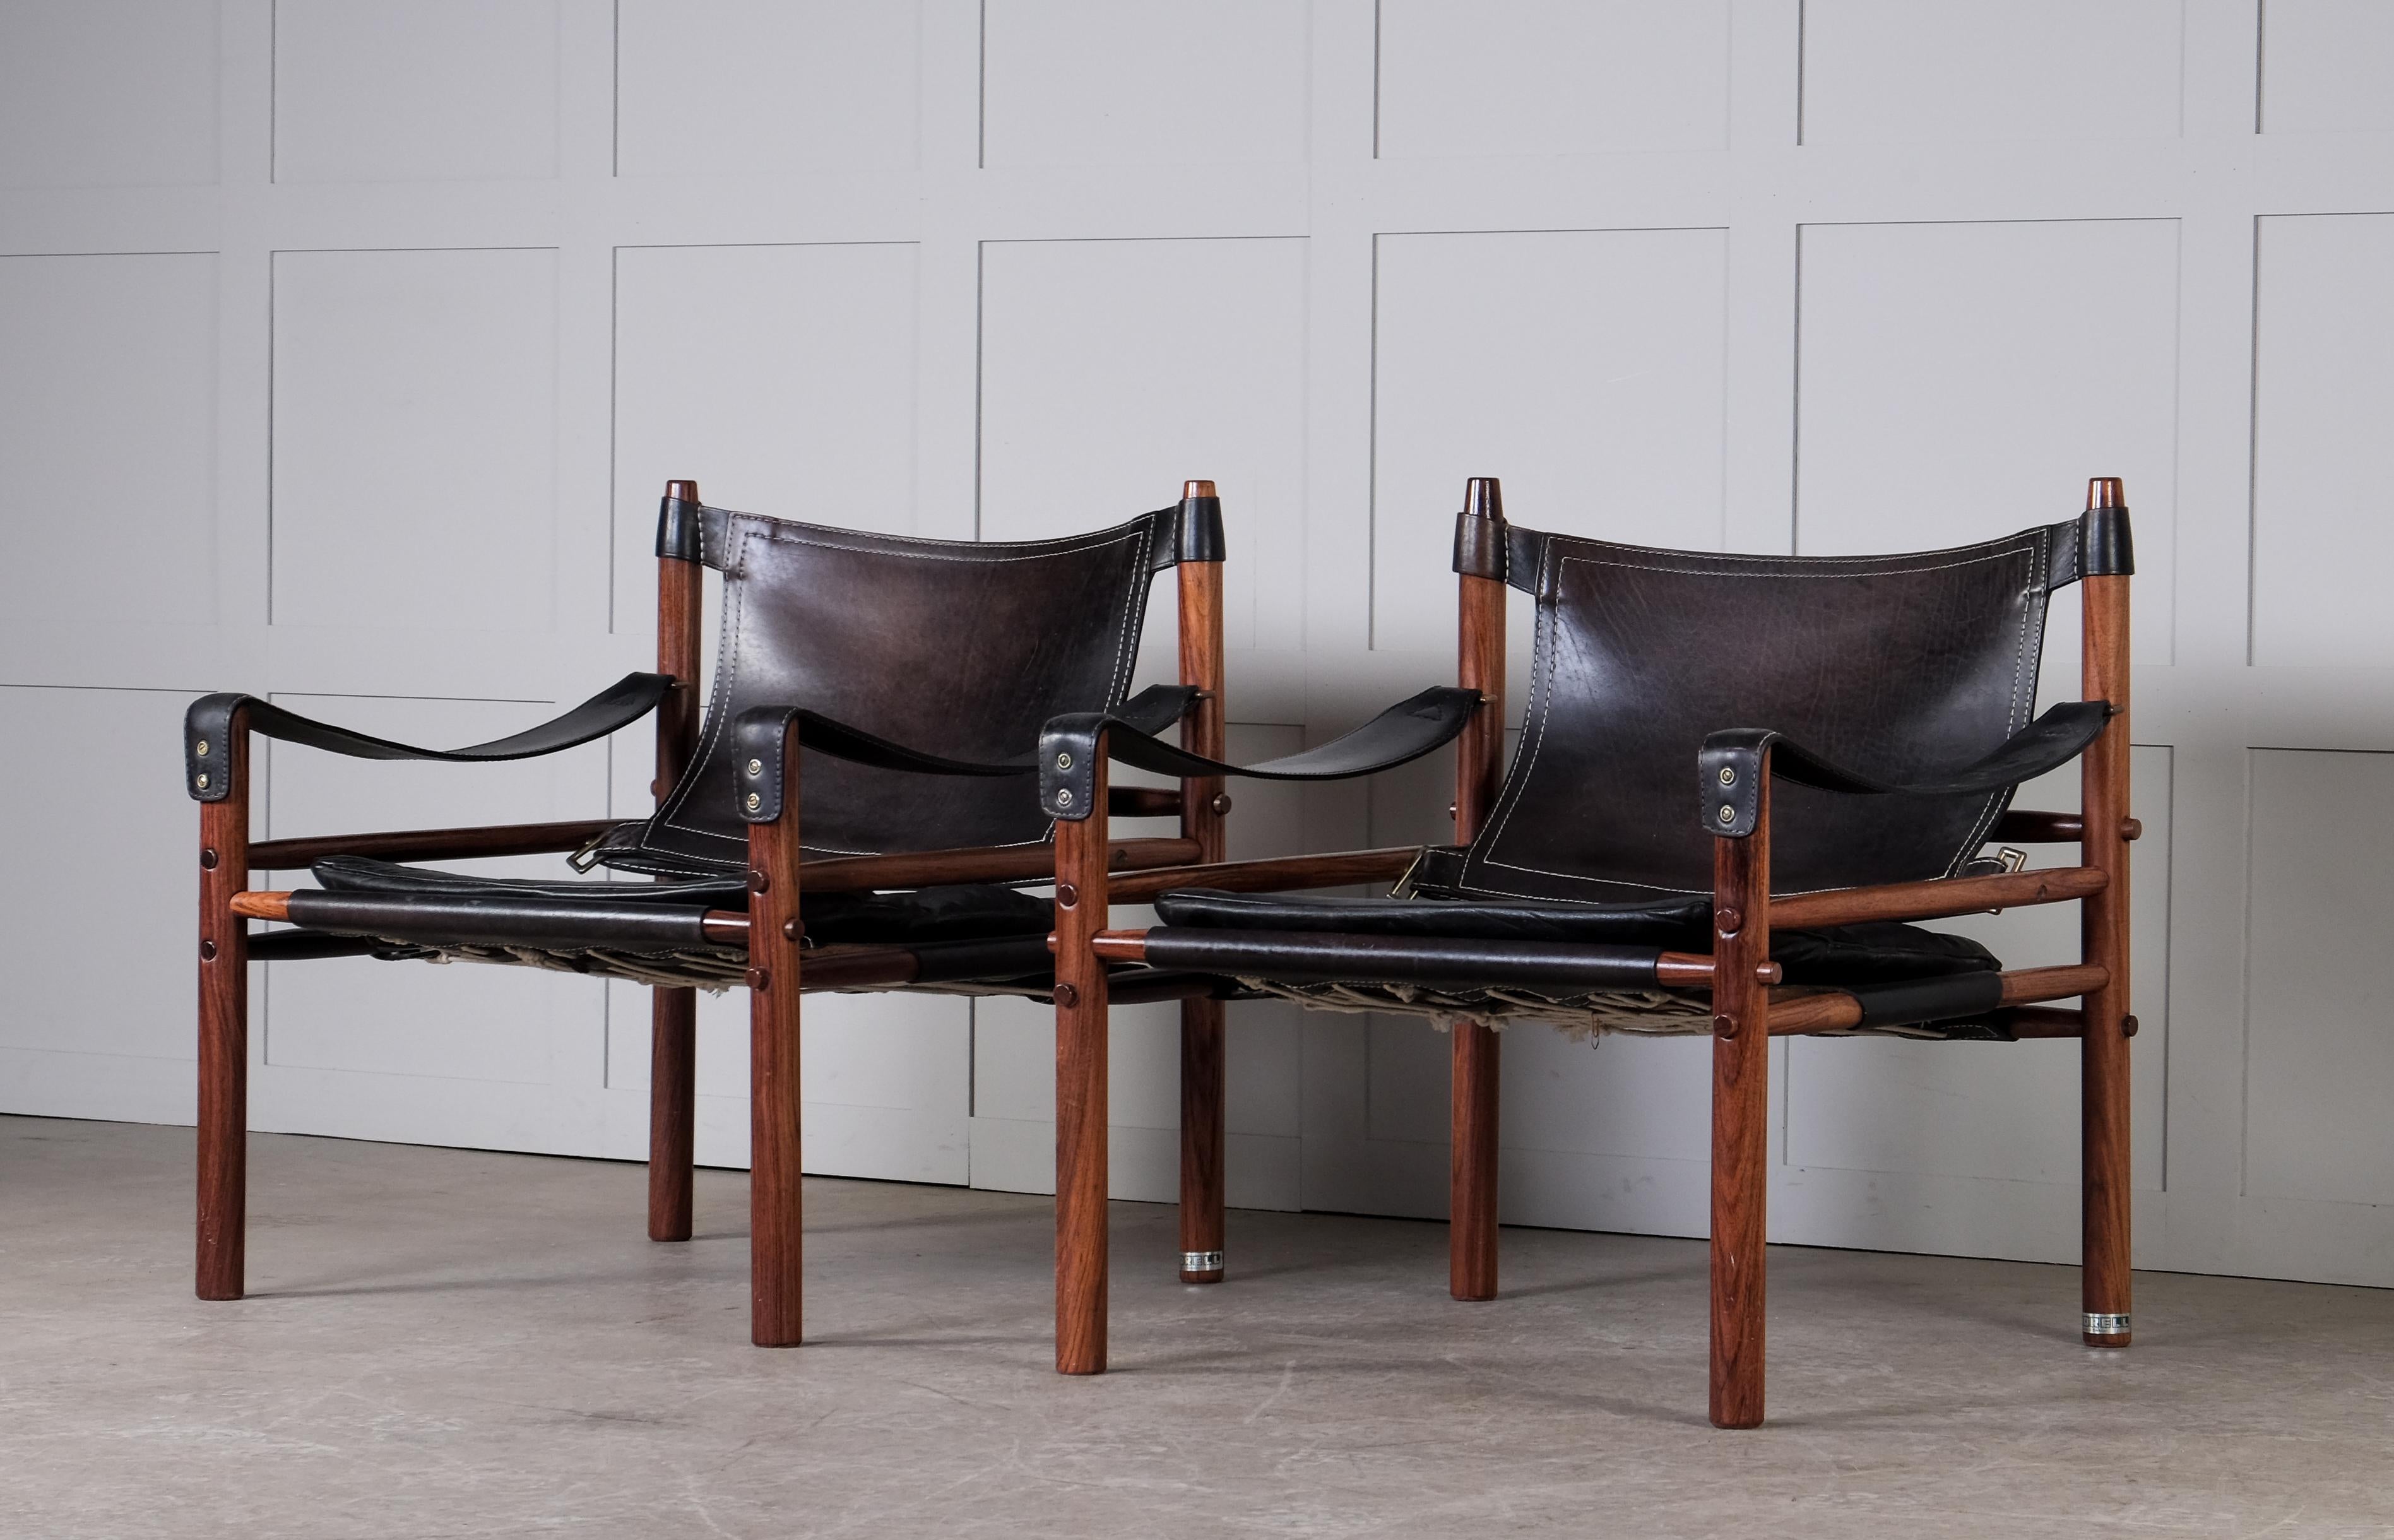 Paar Safaristühle Modell Sirocco in gutem Zustand mit original schwarzem Leder.
Entworfen von Arne Norell, hergestellt von Arne Norell AB in Aneby, Schweden, 1960er Jahre.
Globaler Haustürversand, Lieferung innerhalb von 10 Tagen: 600 €.




